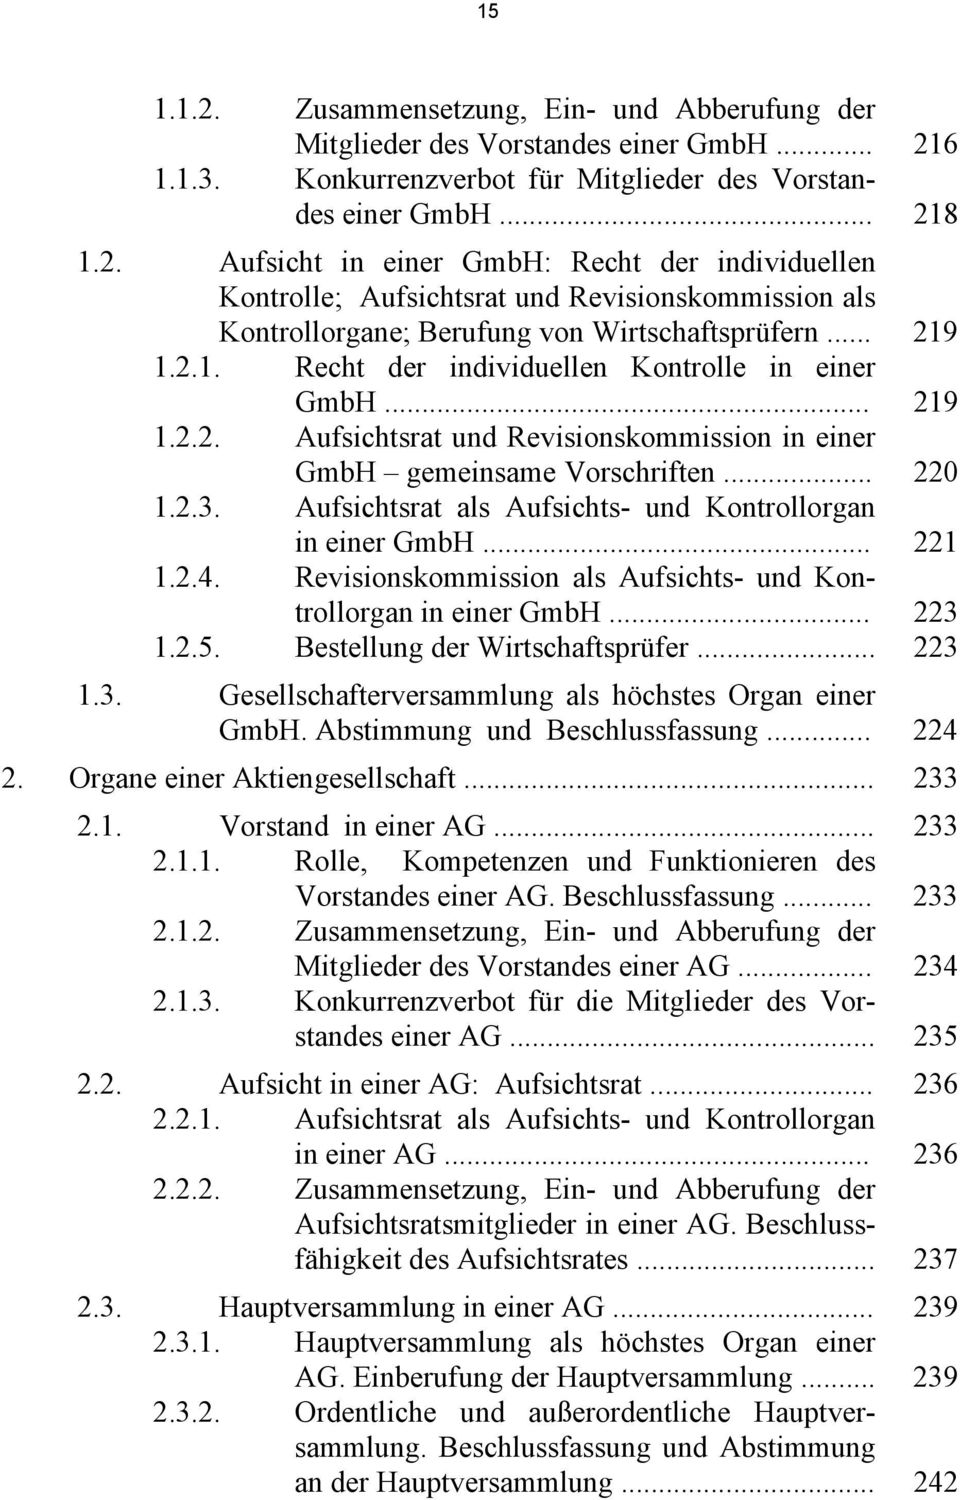 Aufsichtsrat als Aufsichts- und Kontrollorgan in einer GmbH... 221 1.2.4. Revisionskommission als Aufsichts- und Kontrollorgan in einer GmbH... 223 